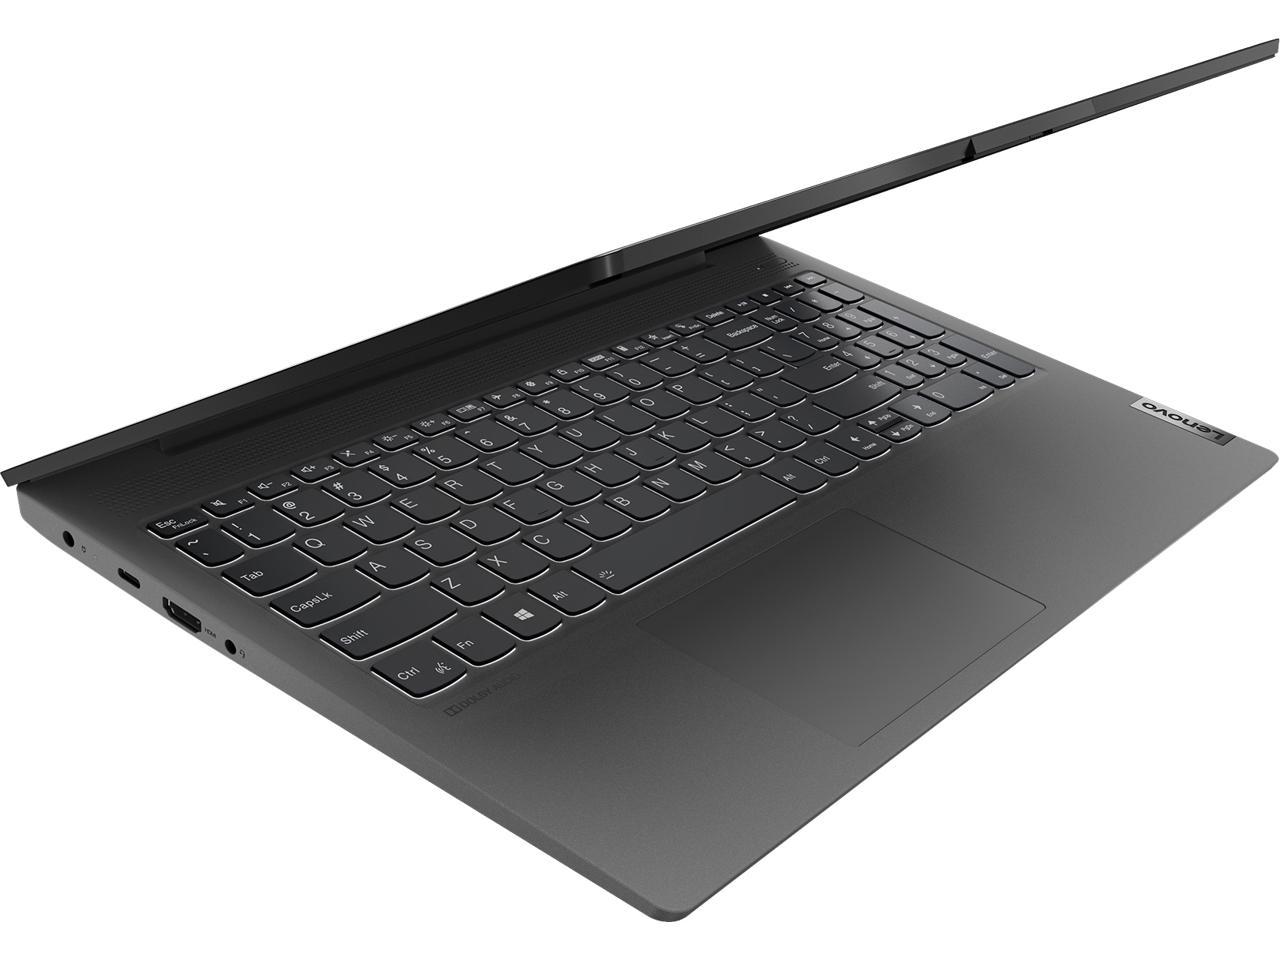 Lenovo IdeaPad 5-15IIL05 15.6" Full HD Laptop i5-1035G1 8GB 256GB SSD Win10 Home